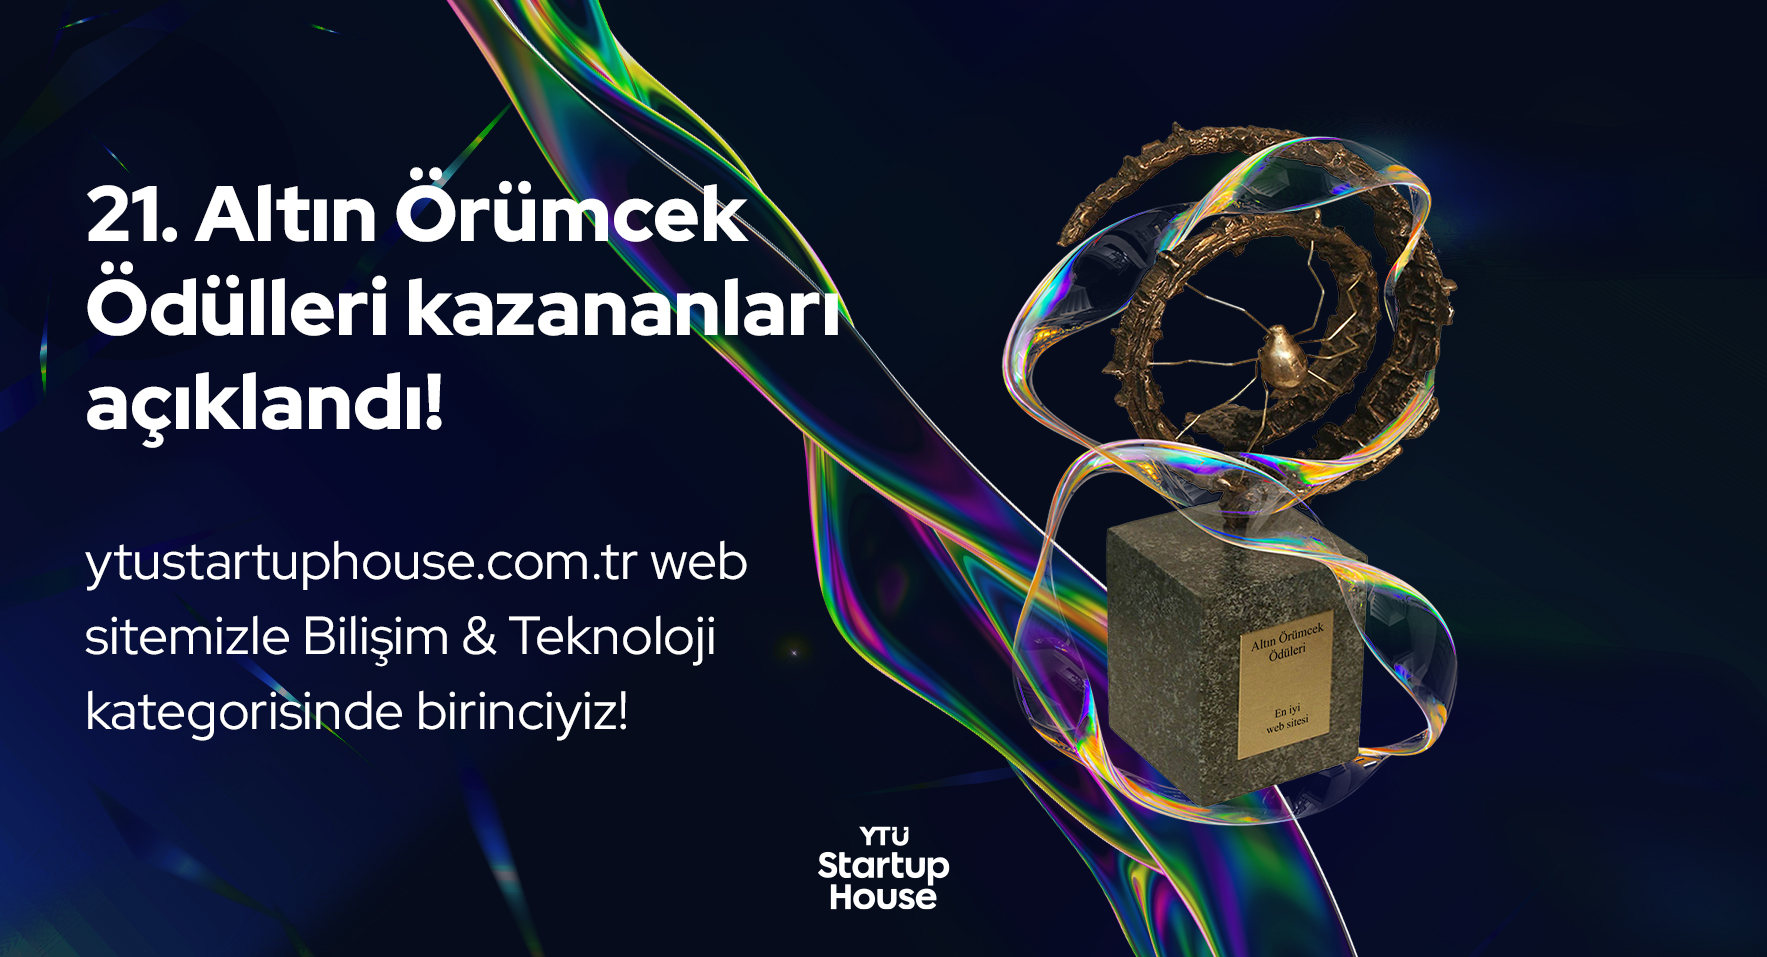 YTU Startup House Web Sitesi 21. Altın Örümcek Ödüllerinde Bilişim & Teknoloji Kategorisinde Birinci Seçildi!